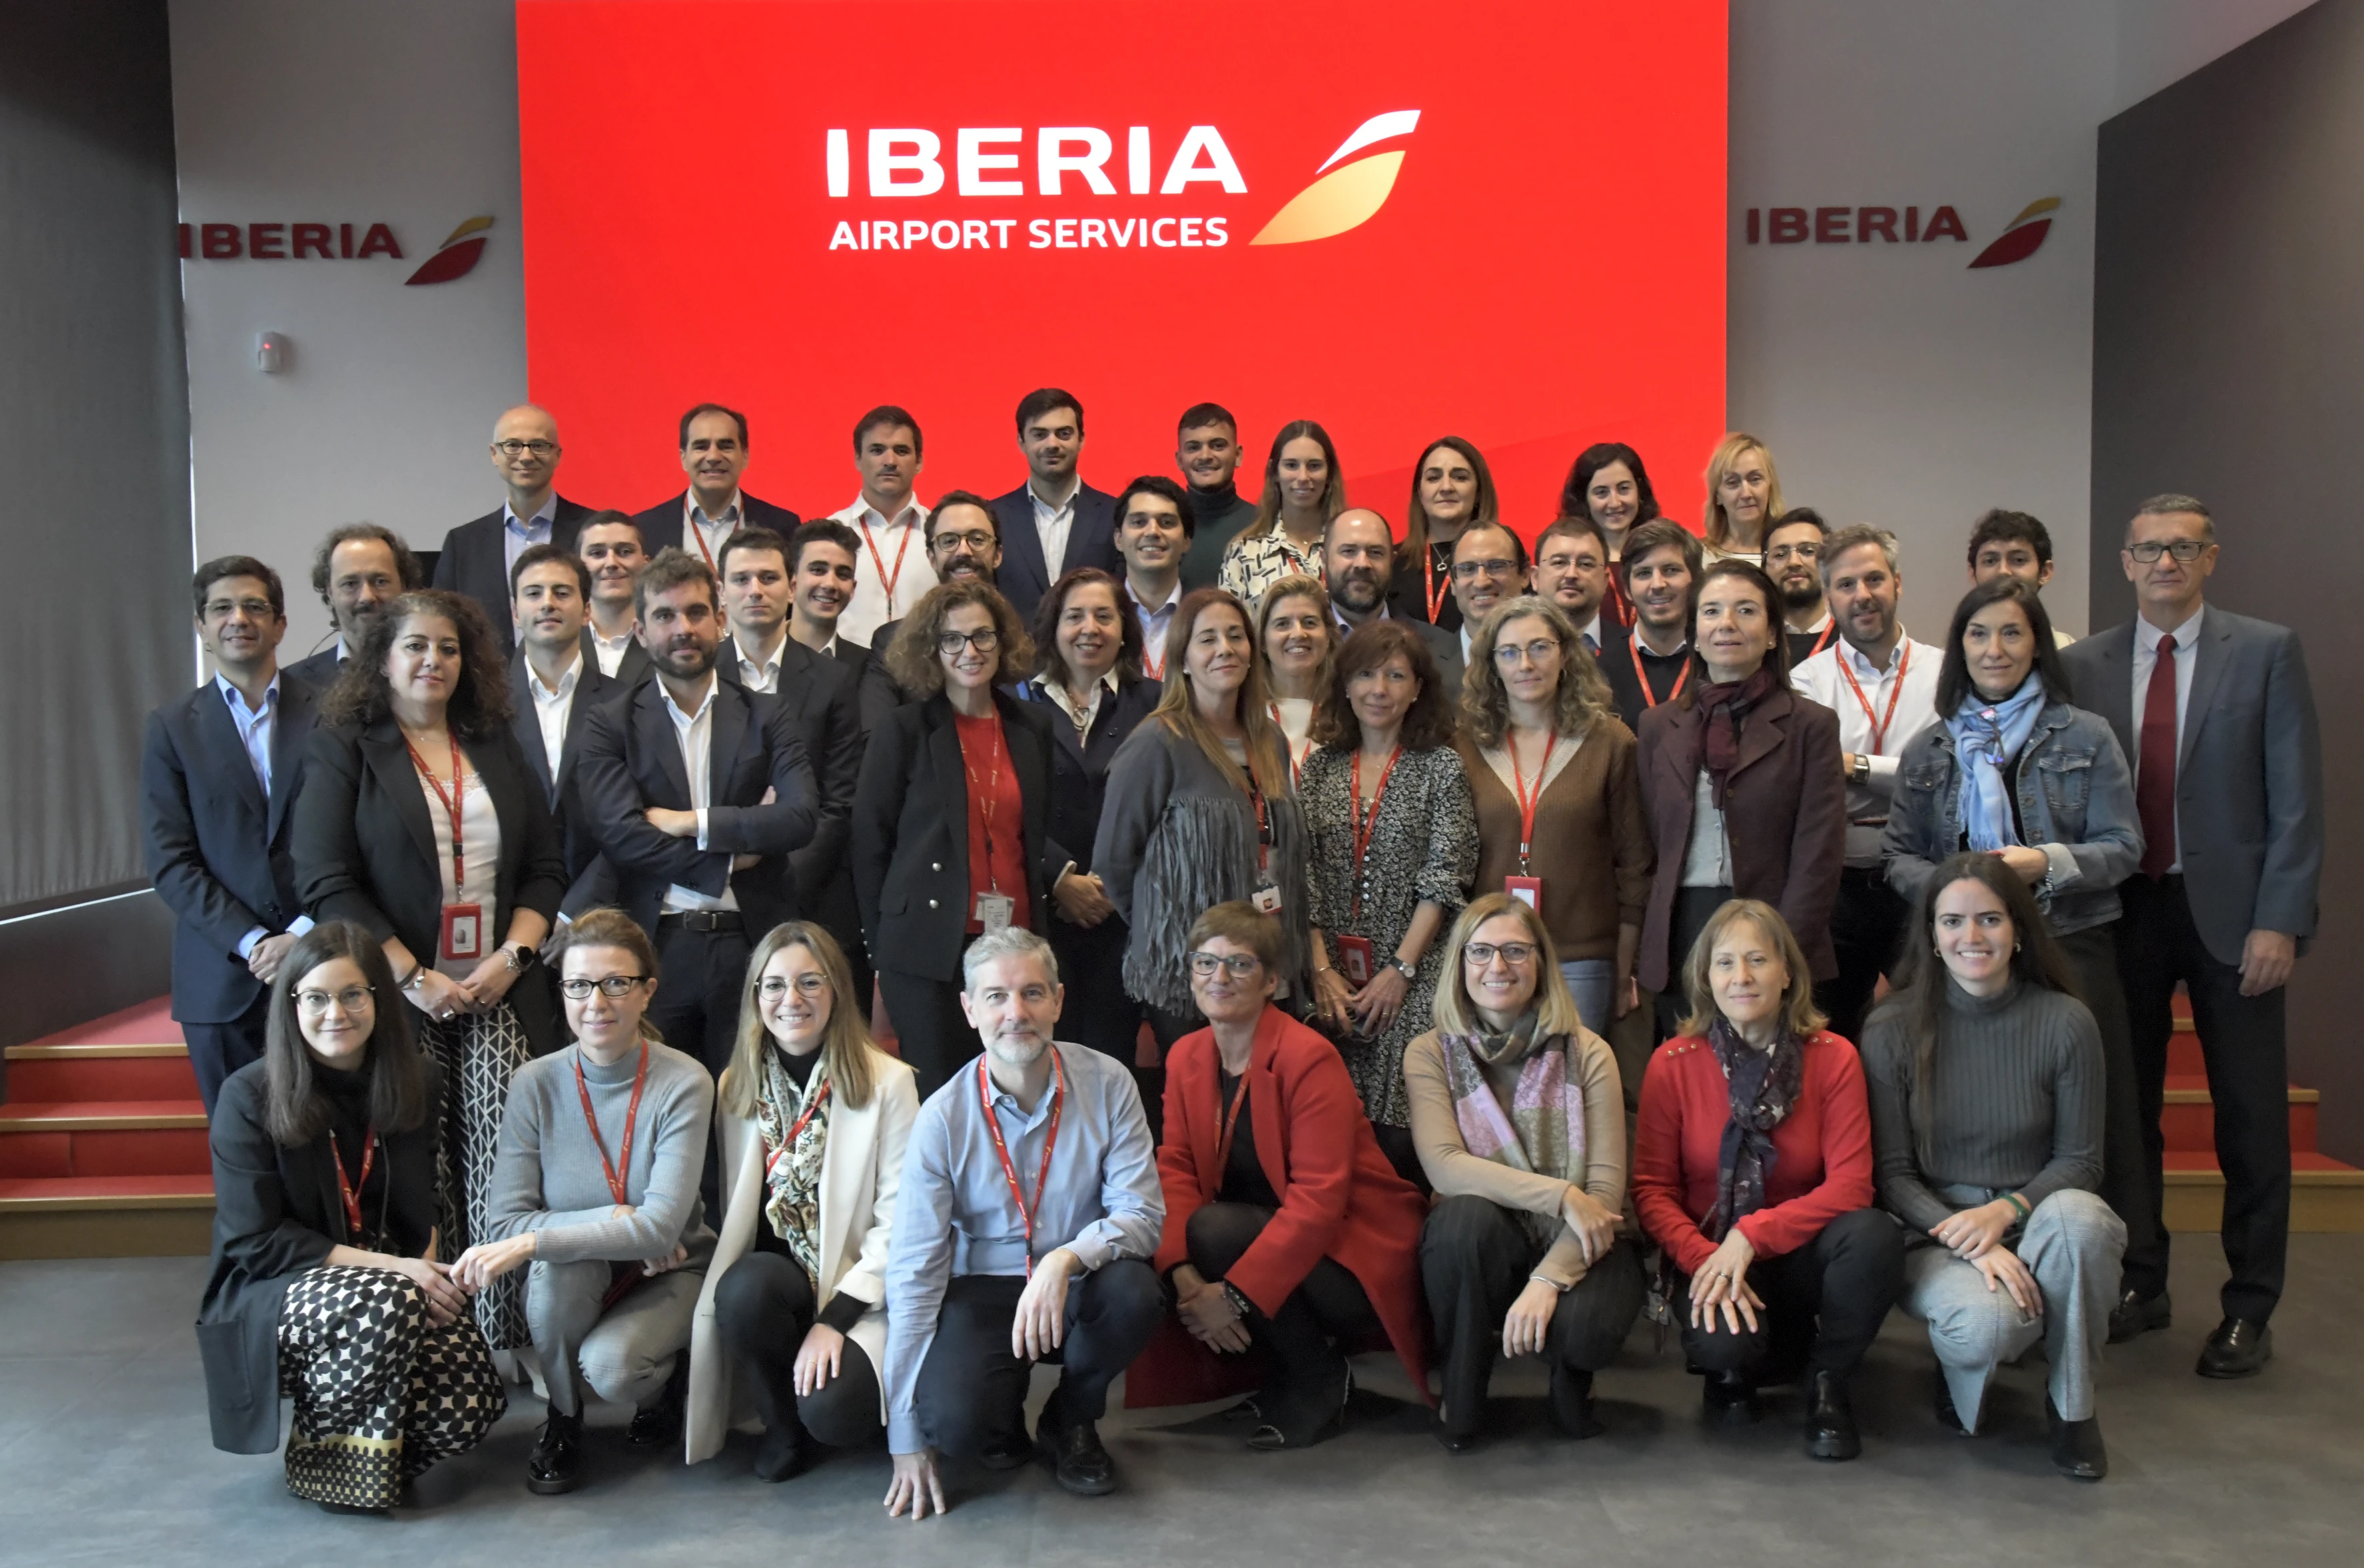 Foto: Iberia Airport Services